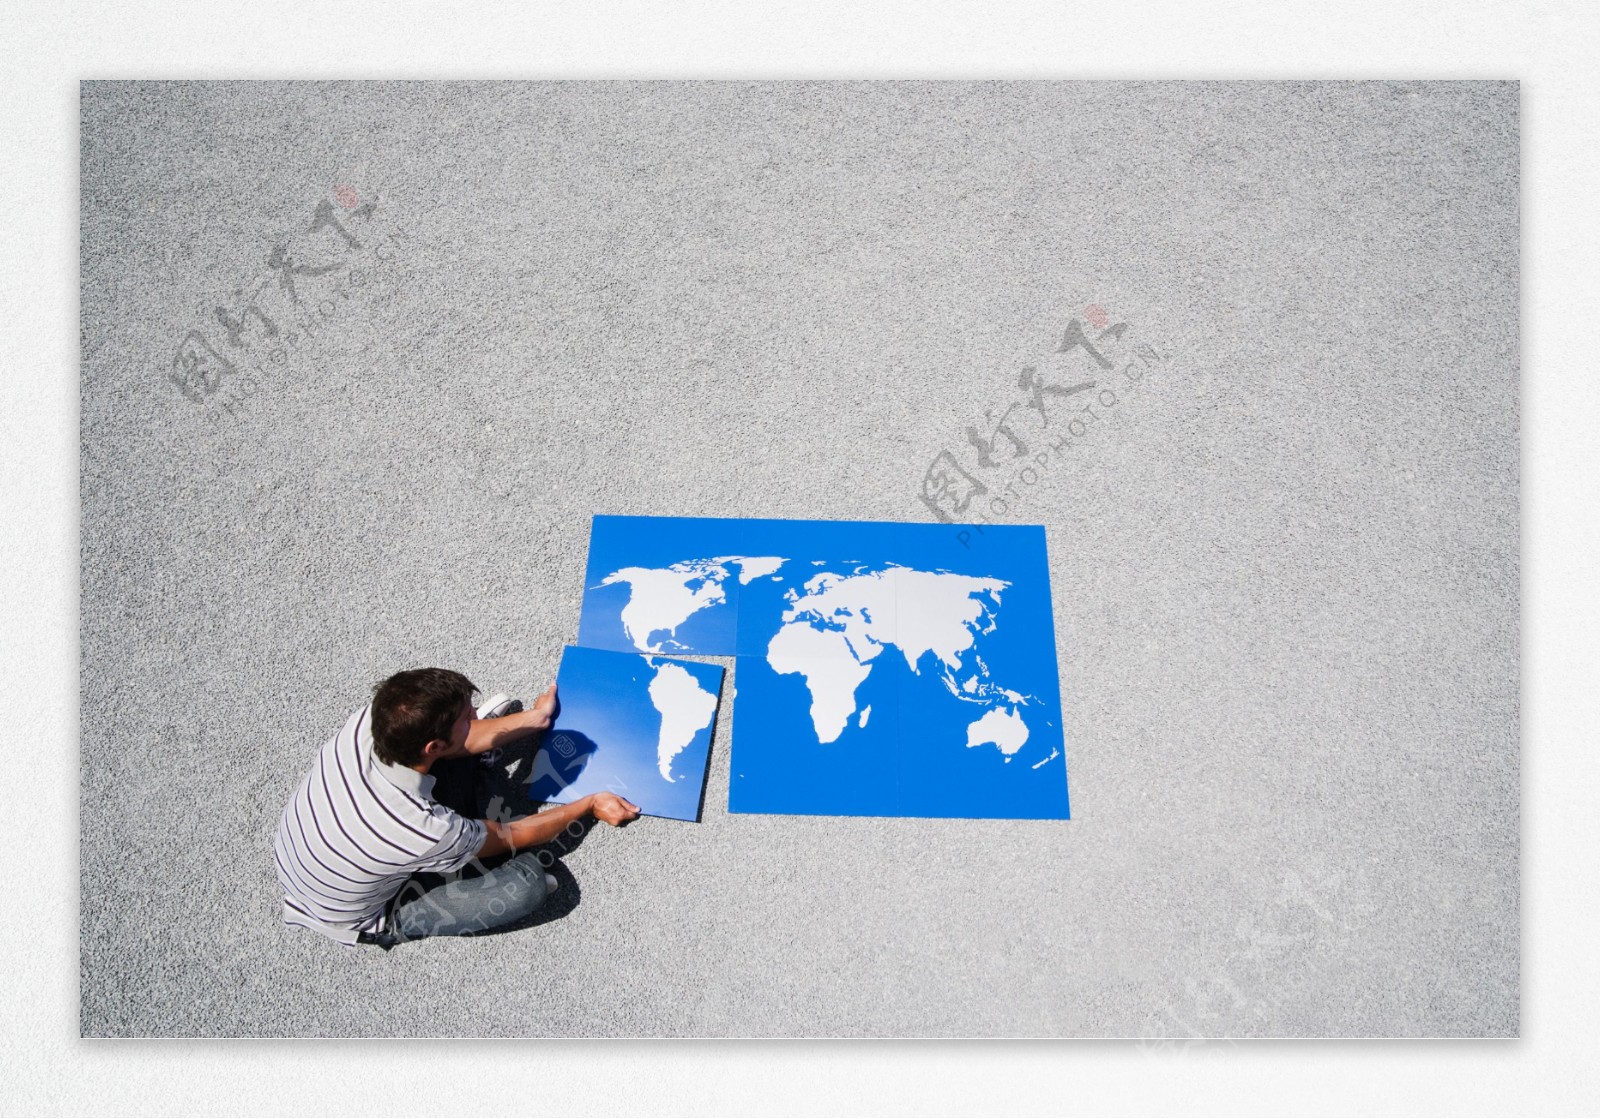 外国男人与世界地图拼图图片